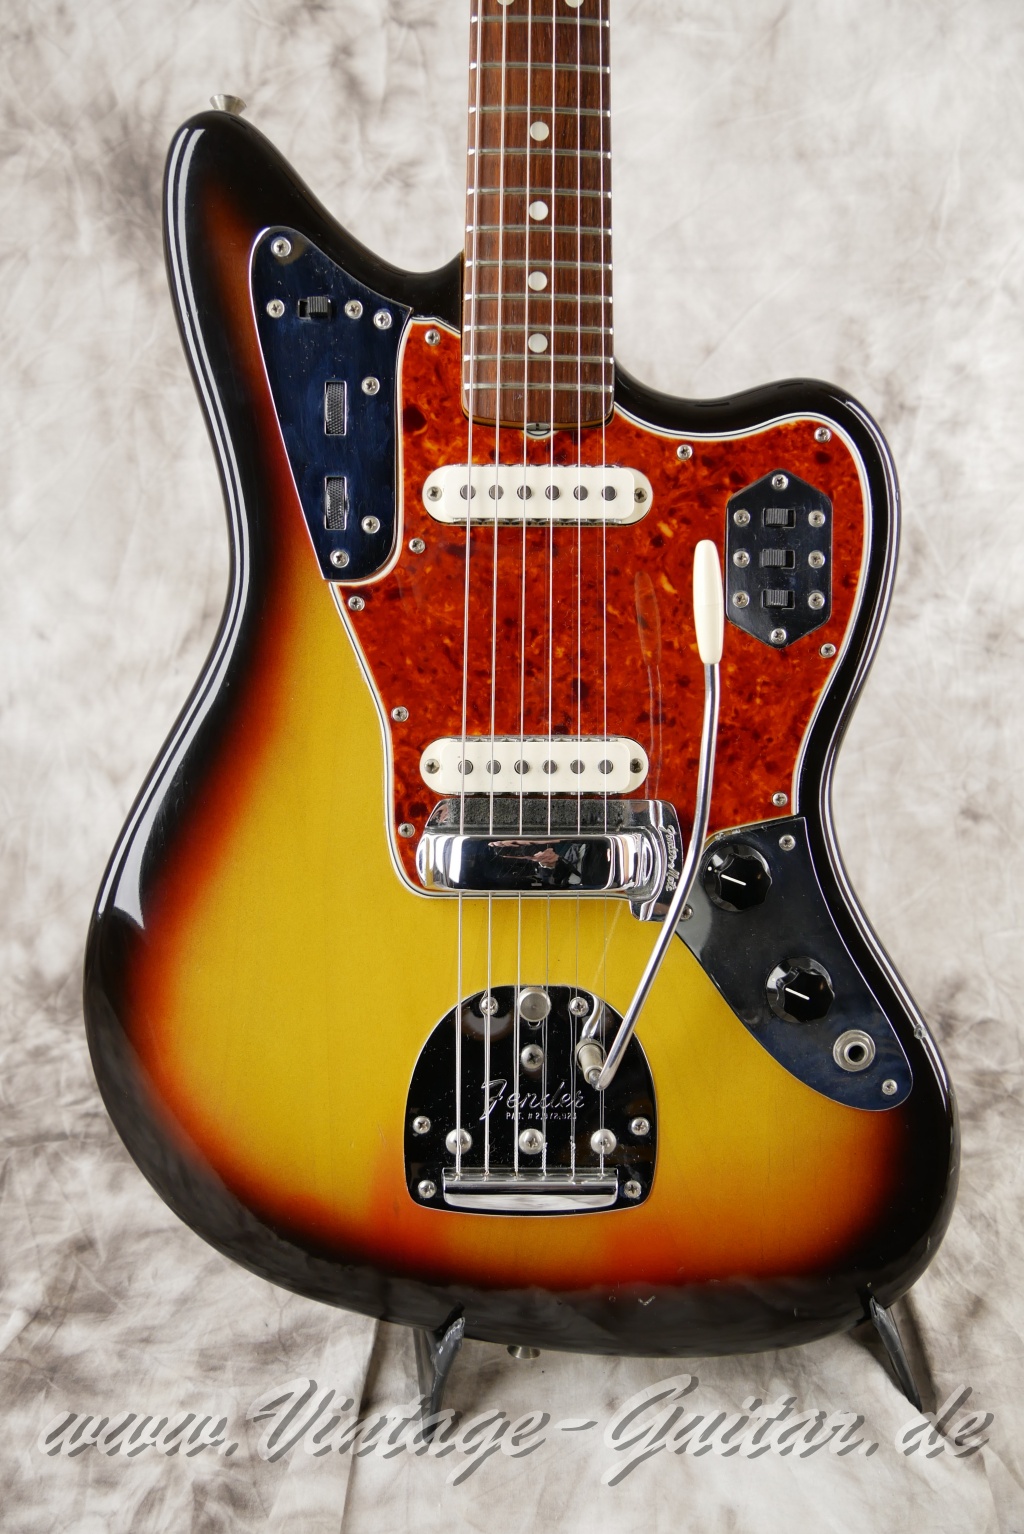 Fender_Jaguar_sunburst_1965_brown_case-007.JPG